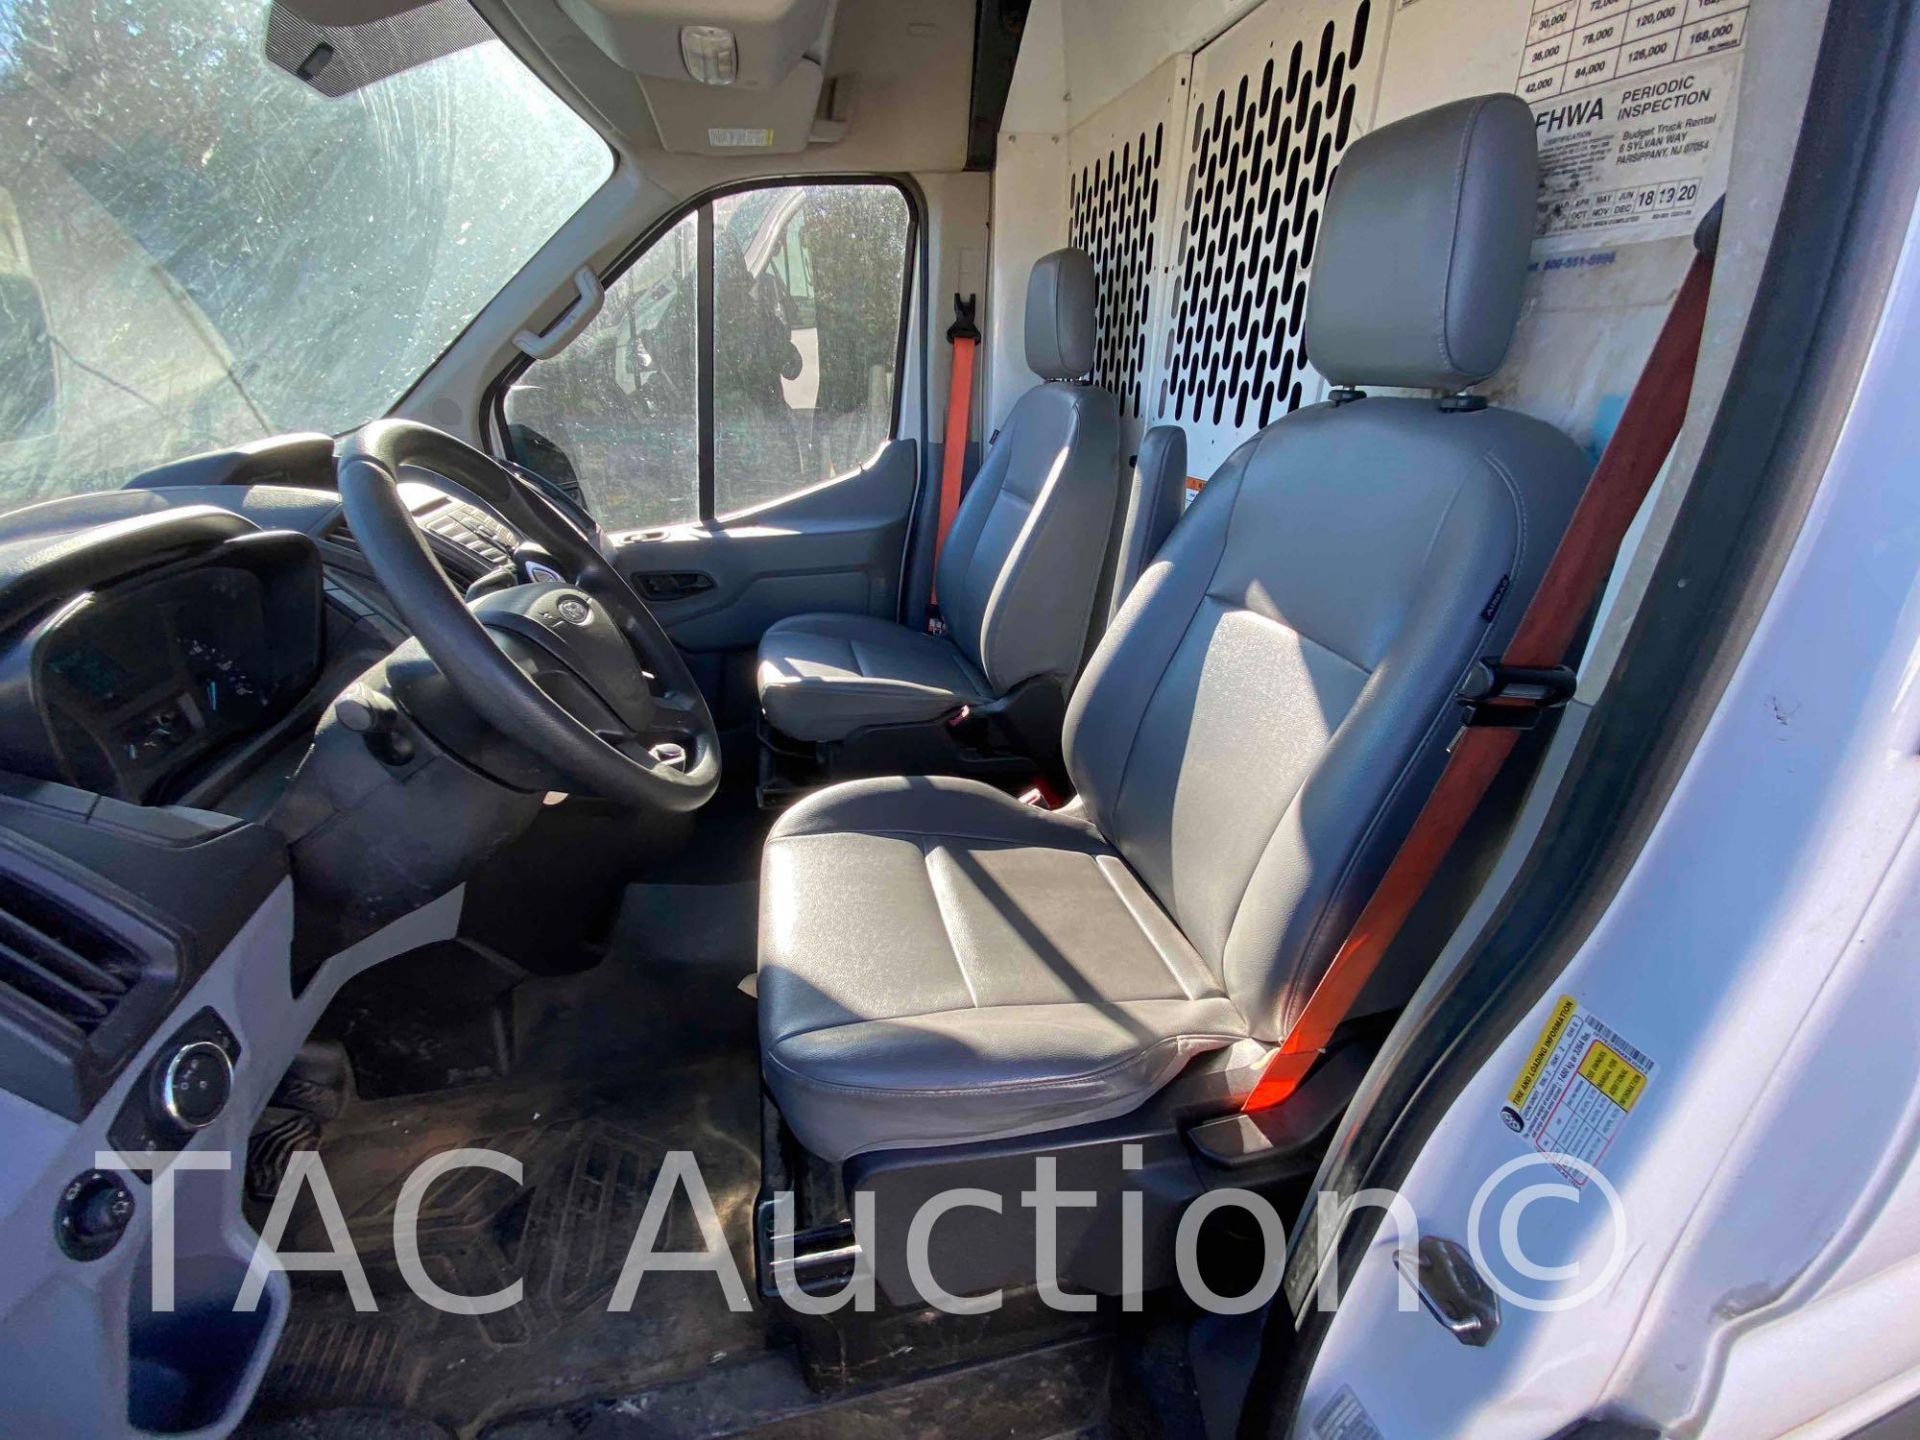 2019 Ford Transit 150 Cargo Van - Image 29 of 49